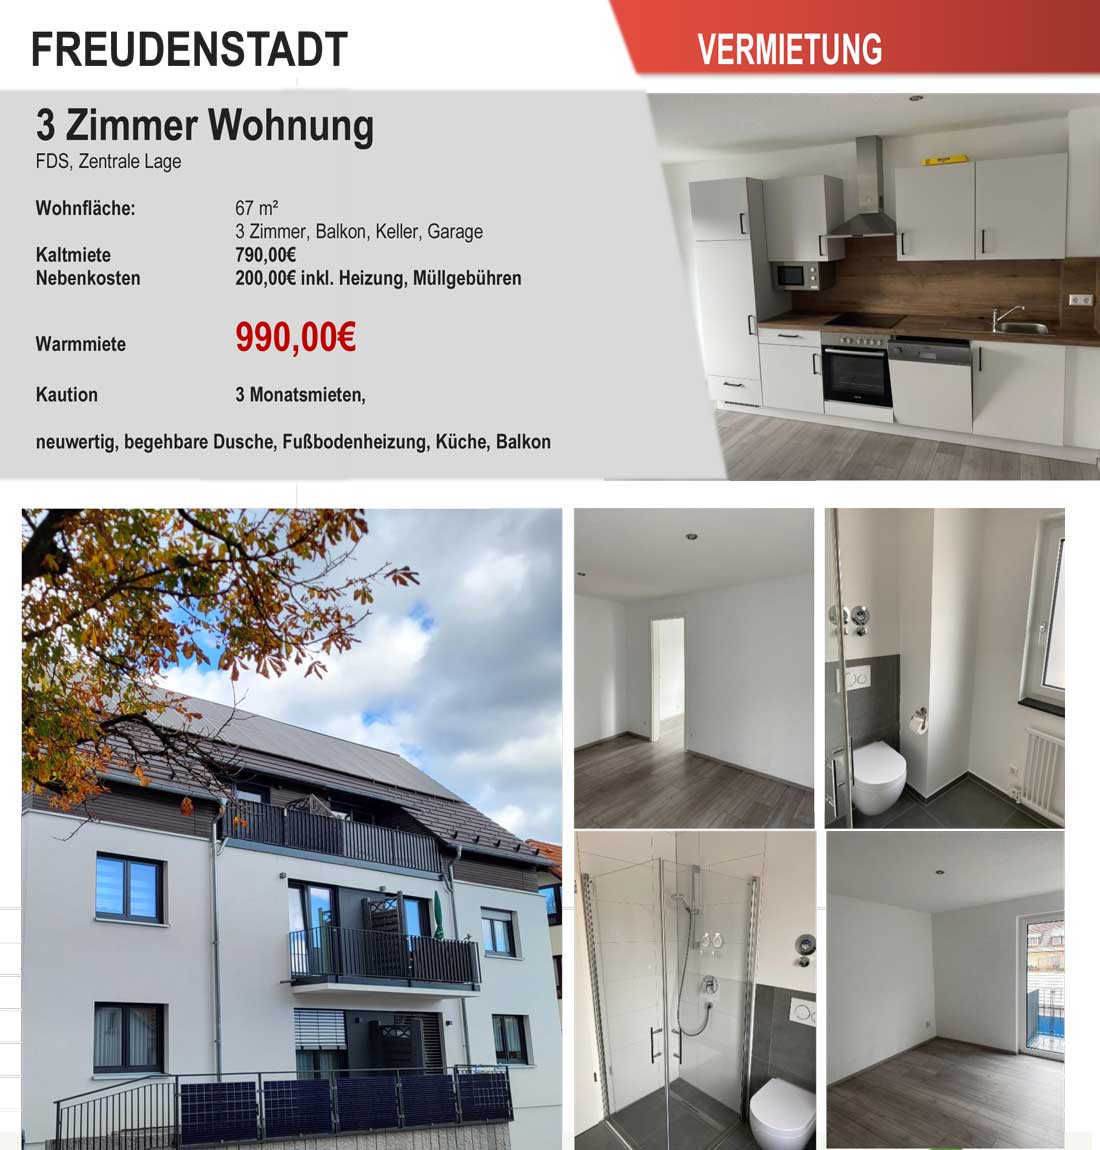 3 Zimmer Wohnung | Freudenstadt - zentrale Lage